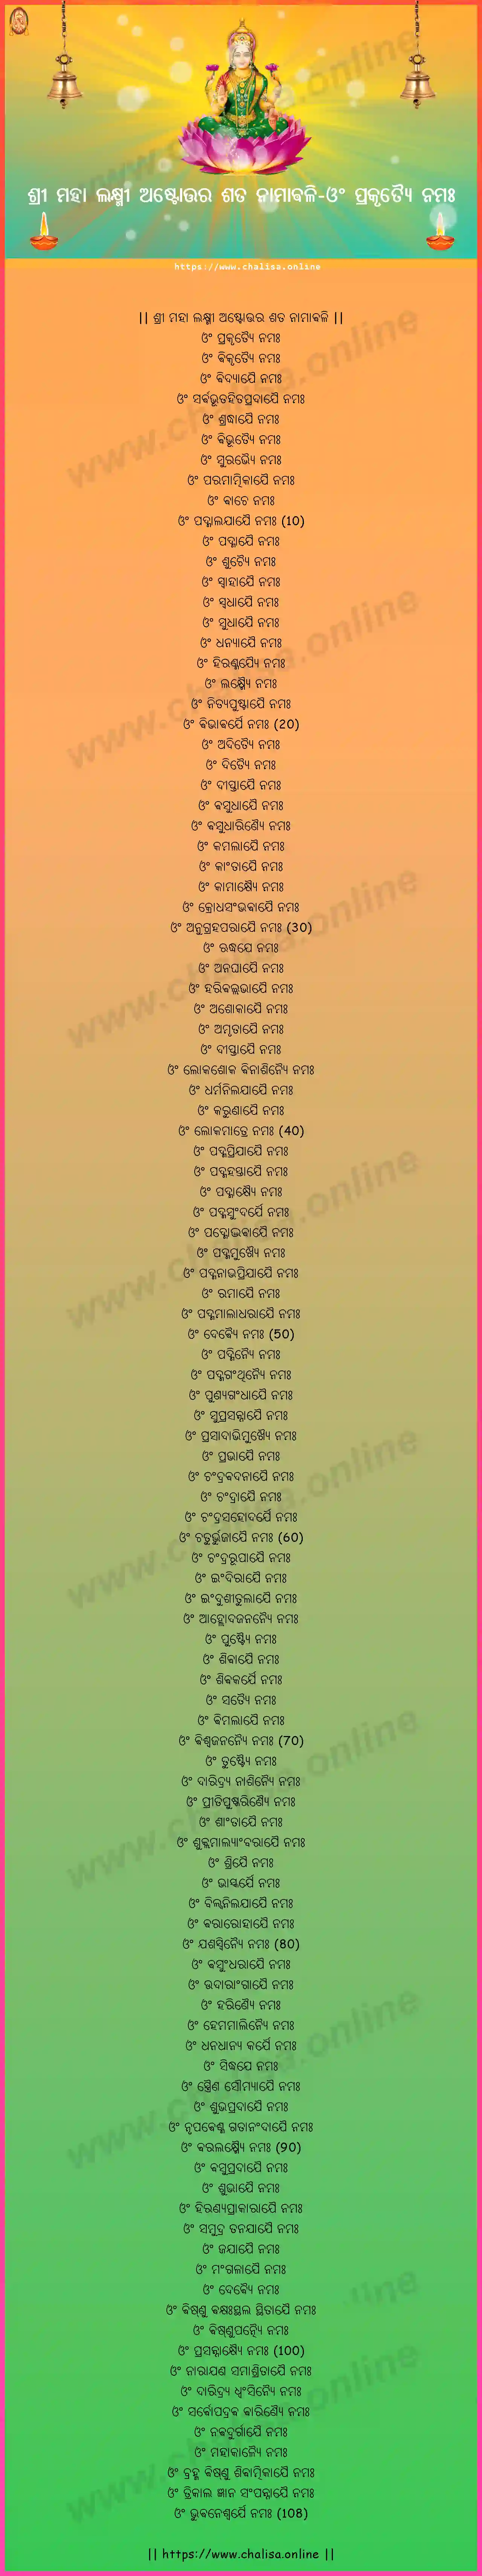 om-prakrtyai-namah-sree-maha-lakshmi-ashtottara-sata-naamaavali-oriya-oriya-lyrics-download